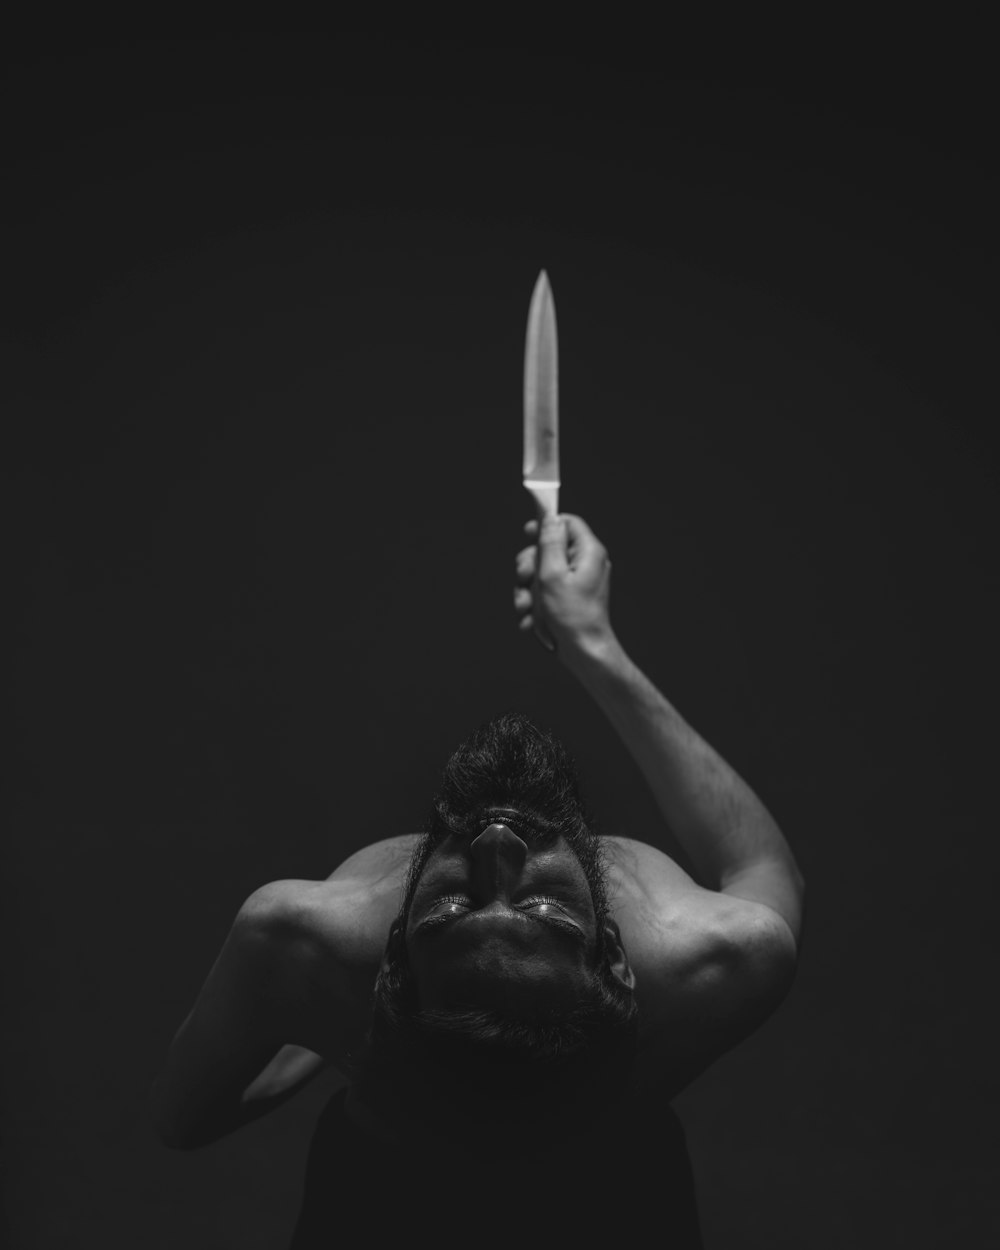 fotografia em tons de cinza do homem segurando a faca